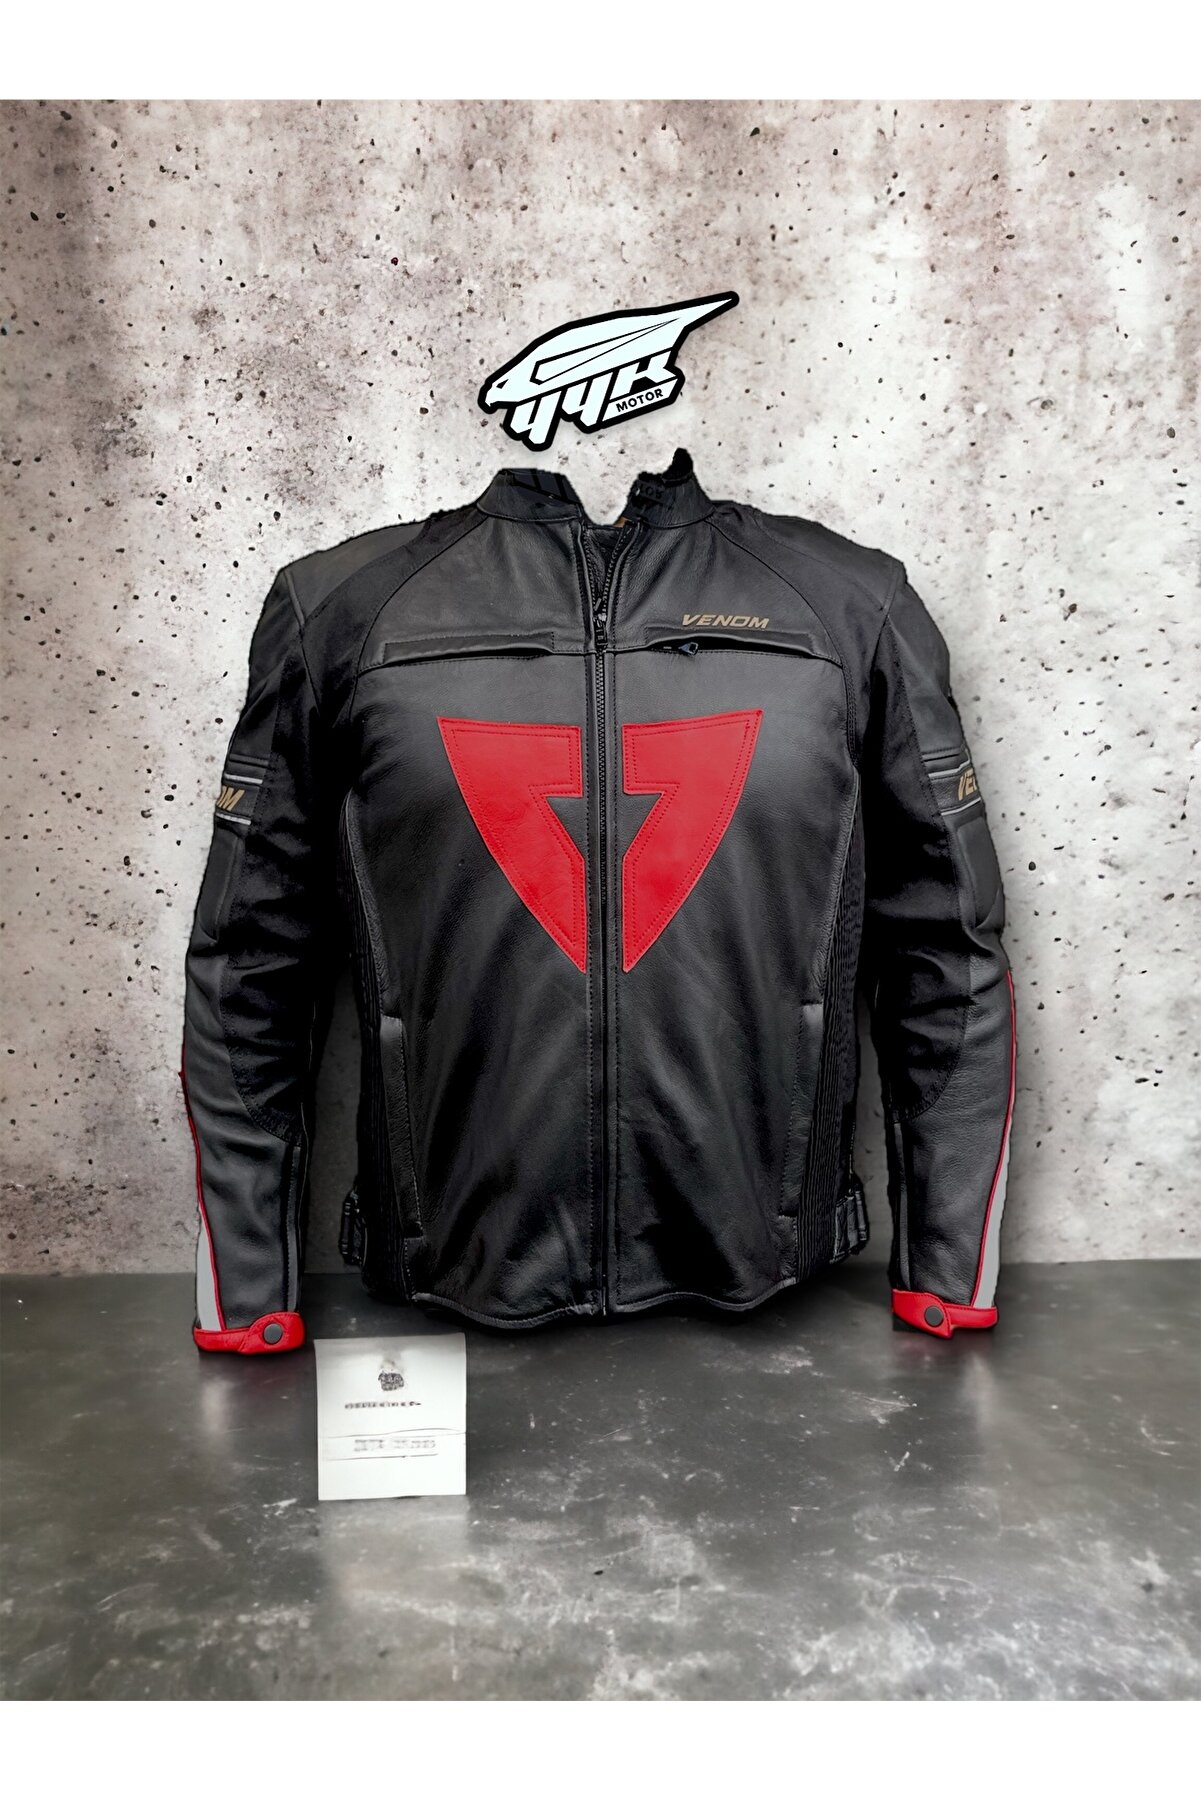 Venom D1 deri ceket, iç astarlı korumalı motosiklet montu